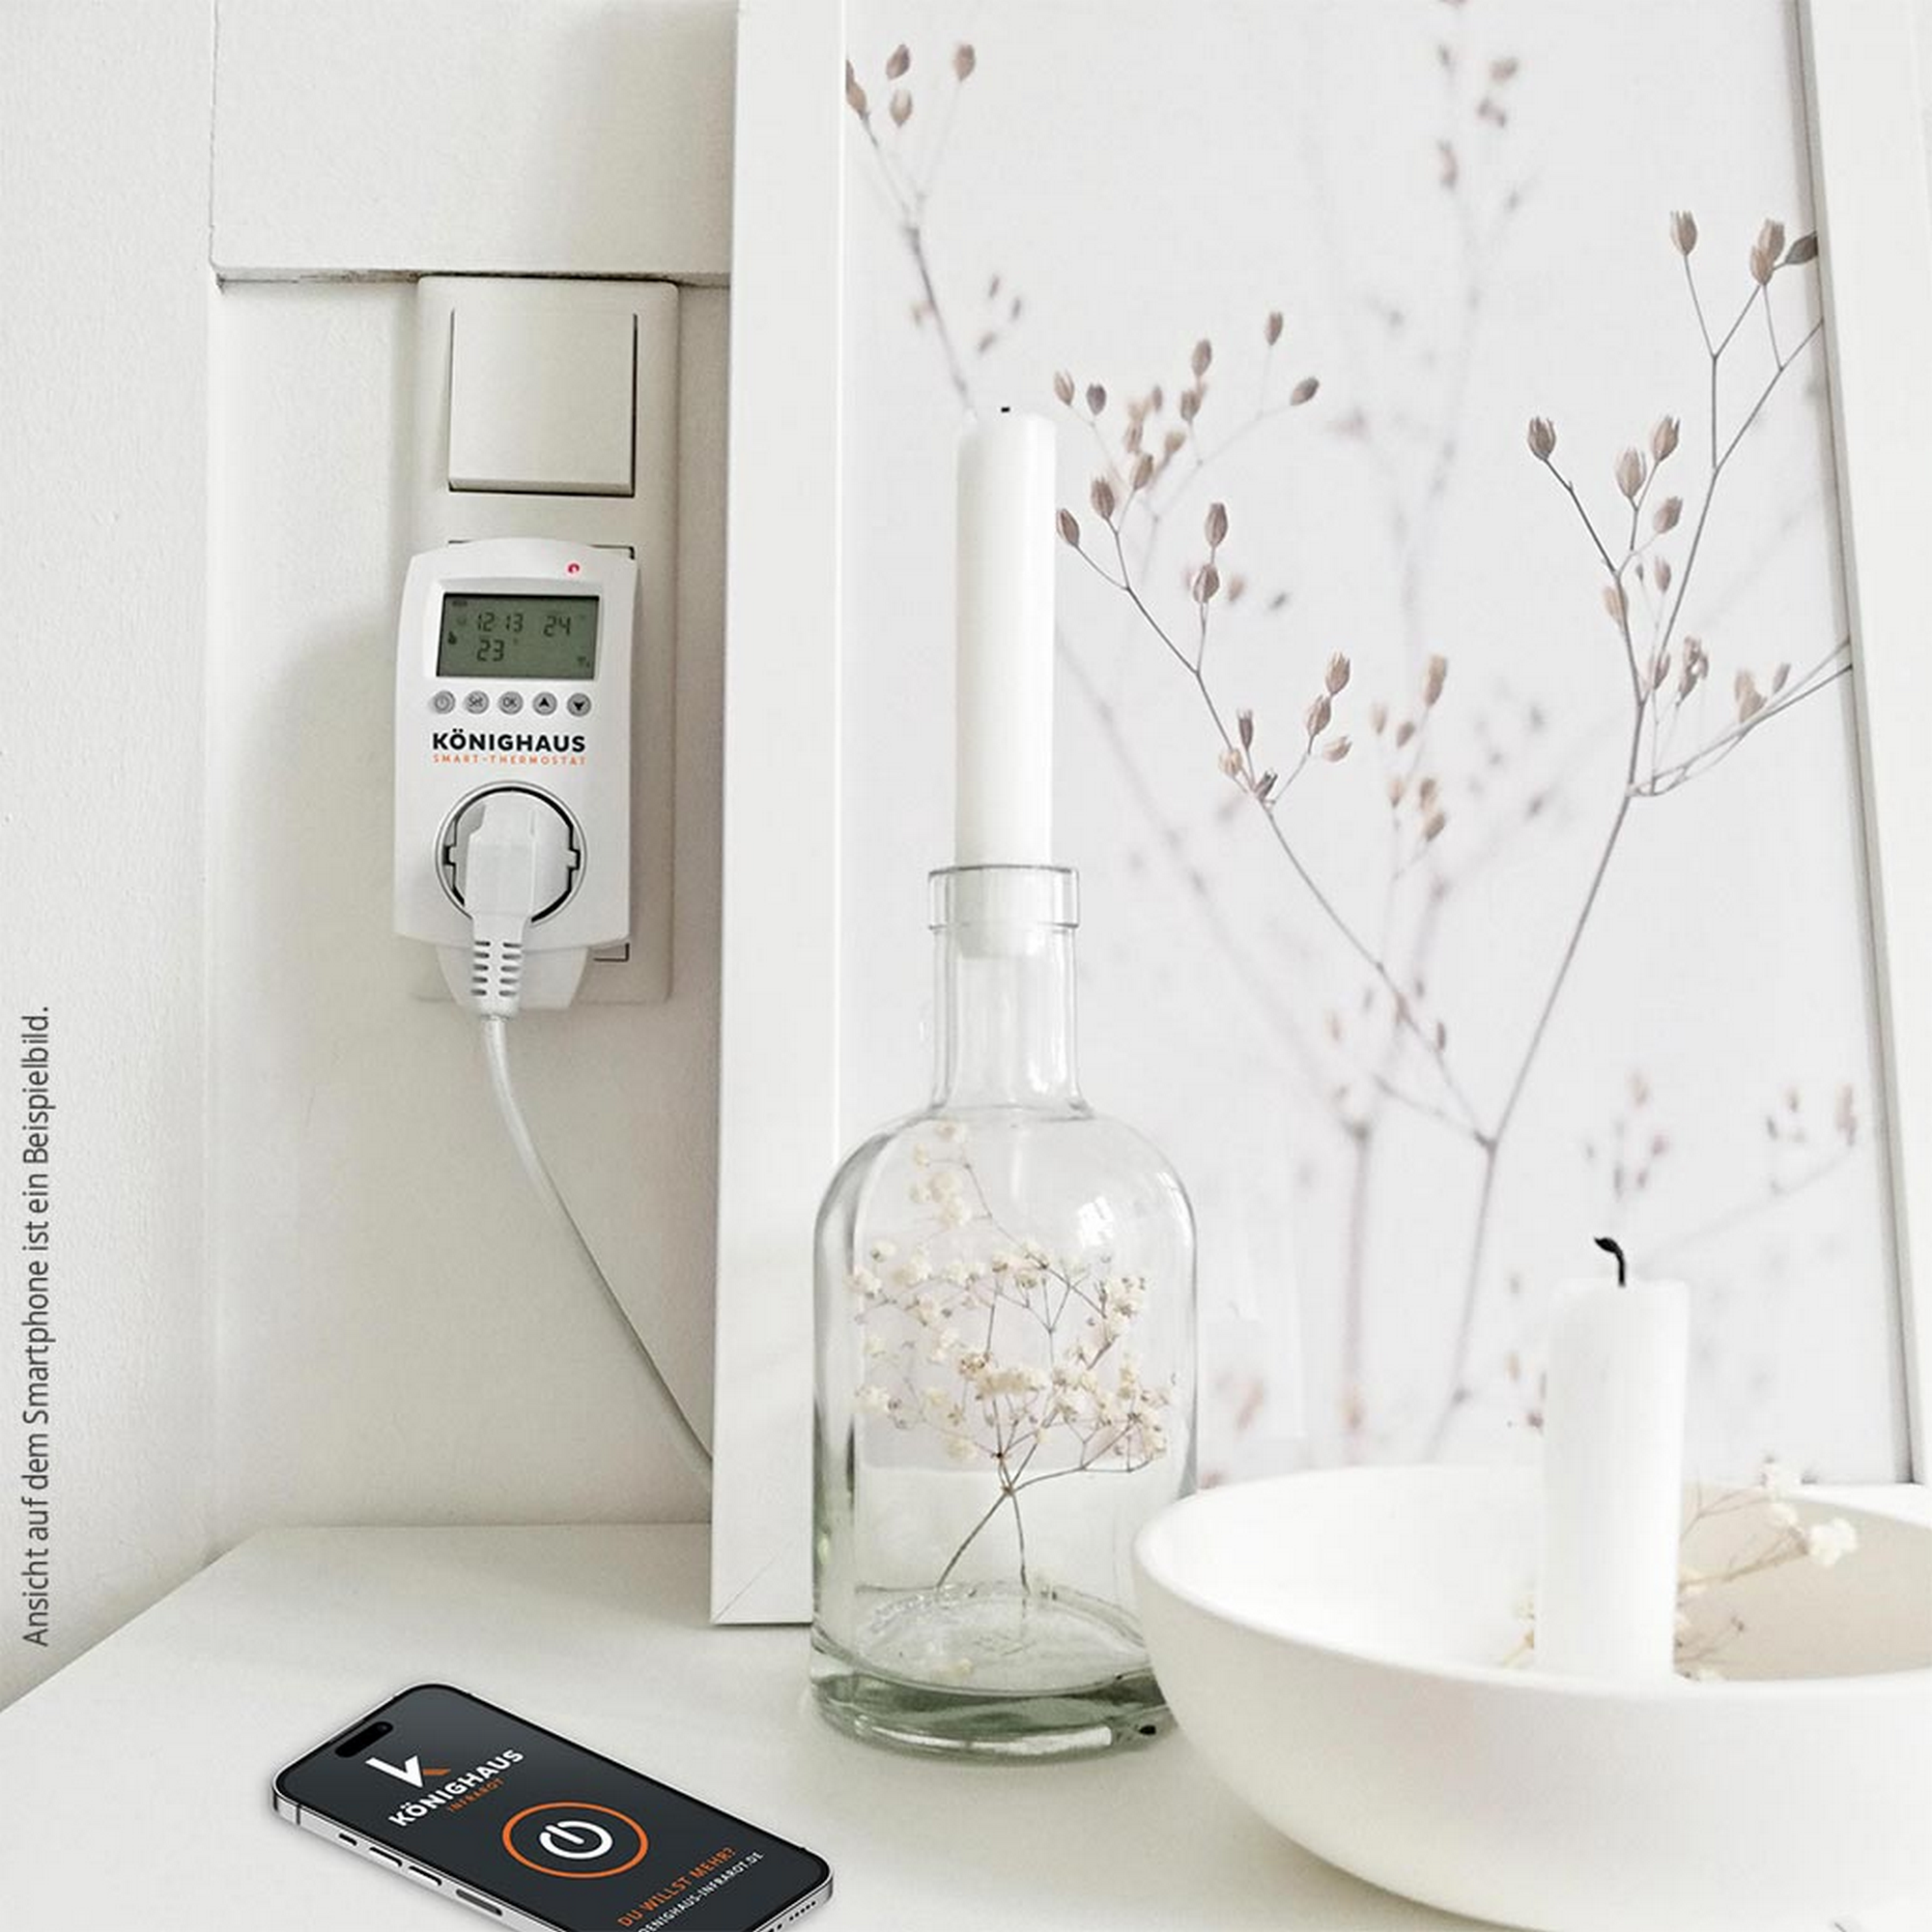 Smart Home-Steckdosenthermostat für Infrarotheizungen + product picture